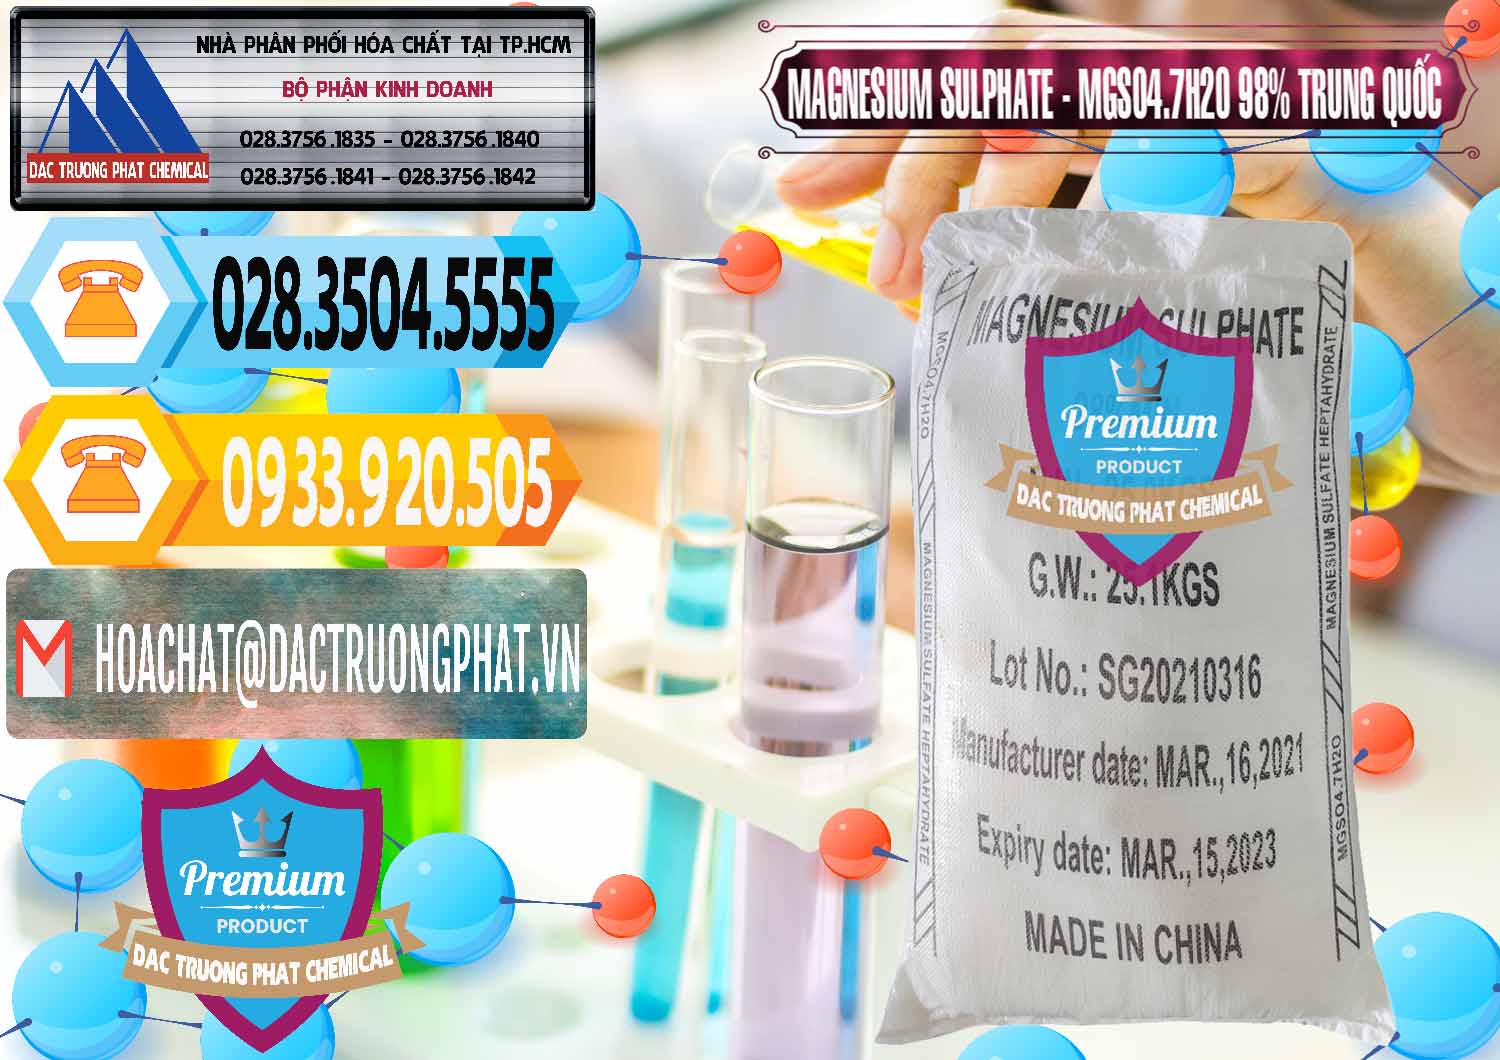 Chuyên cung cấp - bán MGSO4.7H2O – Magnesium Sulphate 98% Trung Quốc China - 0229 - Nơi chuyên phân phối & bán hóa chất tại TP.HCM - hoachattayrua.net